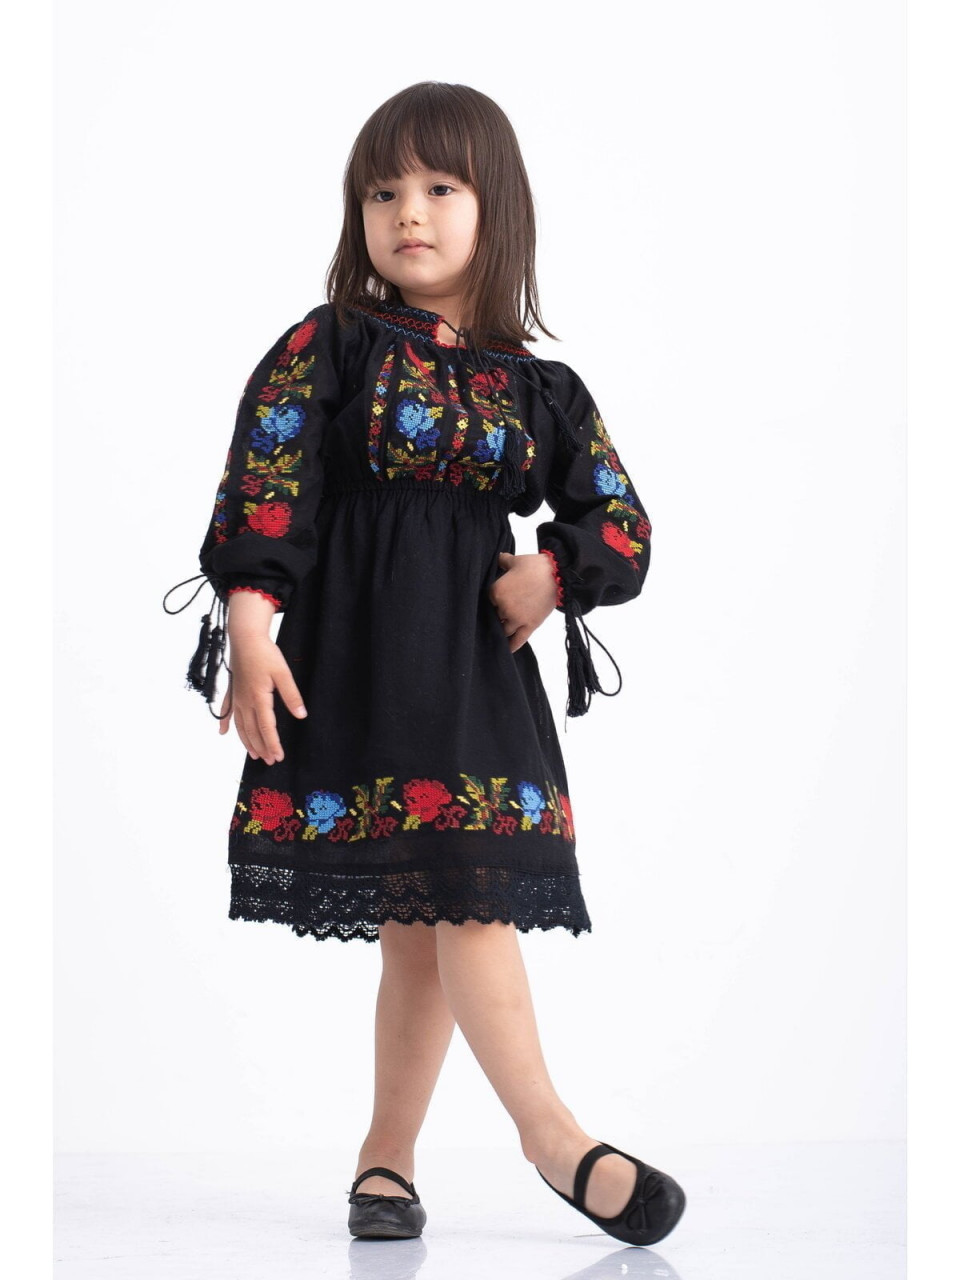 Rochie fetite tip ie traditionala din bumbac negru cu broderie florala multicolora